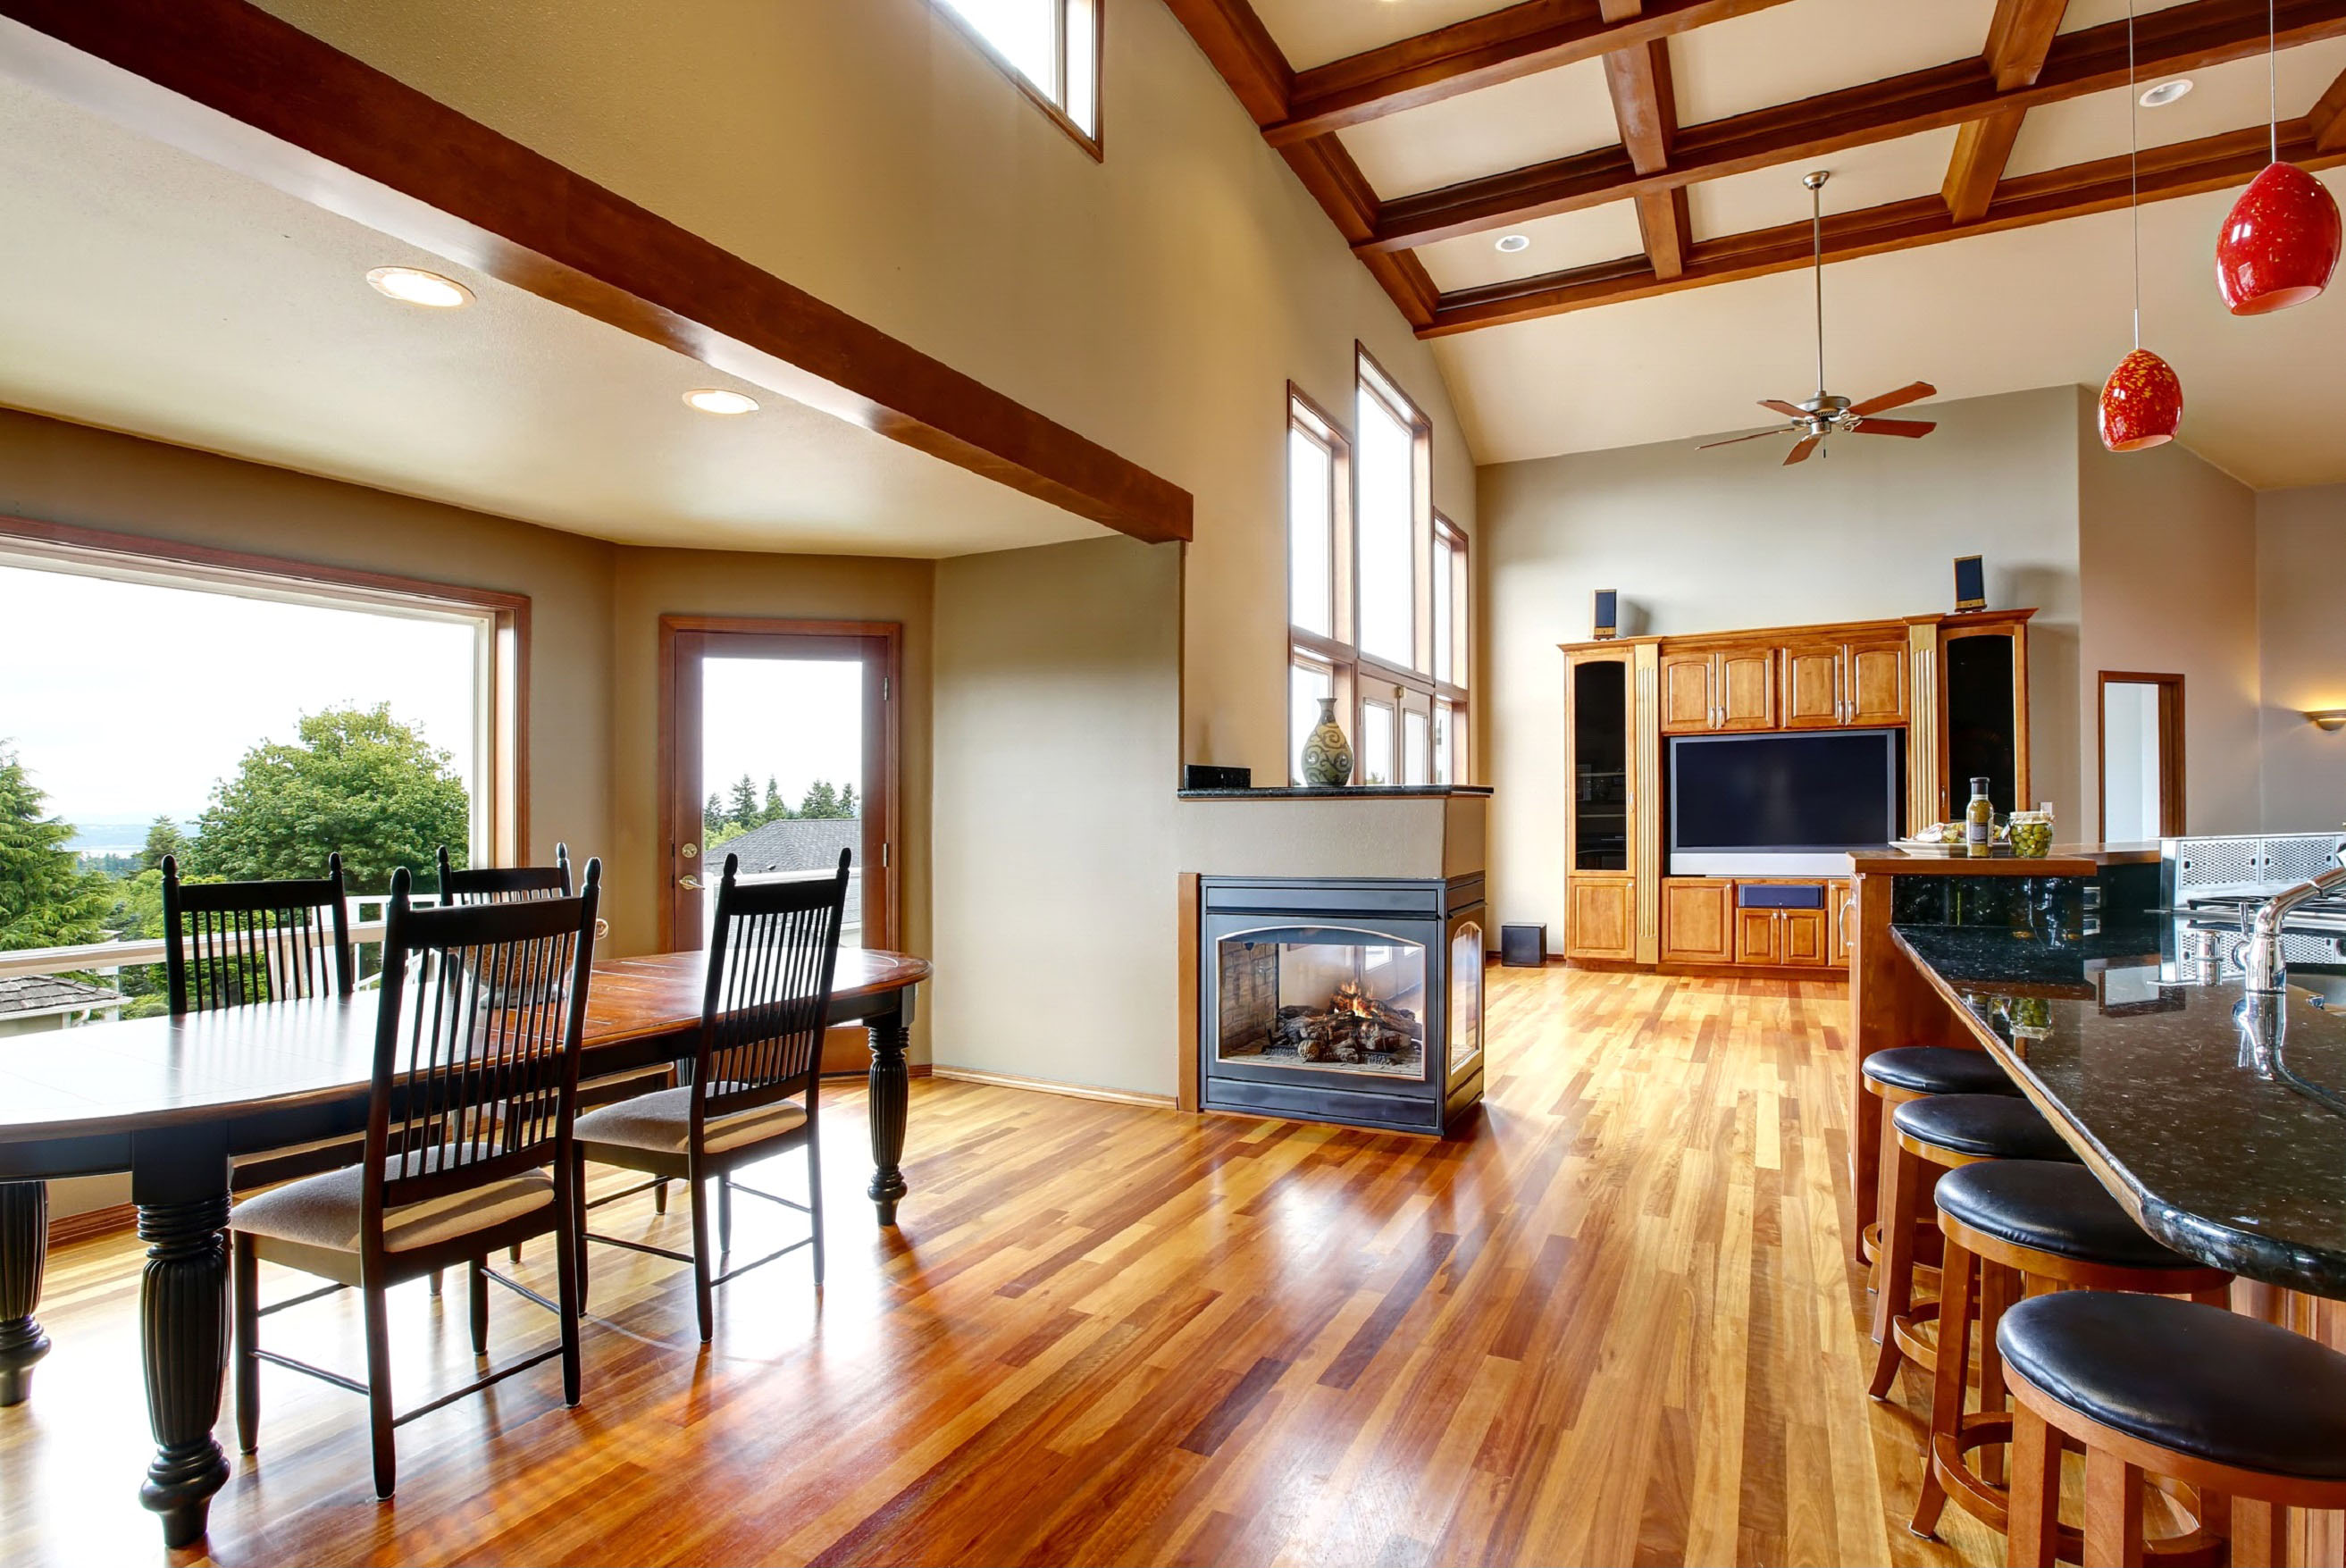 4 Ways Open Floor Plans Make CustomBuilt Homes More